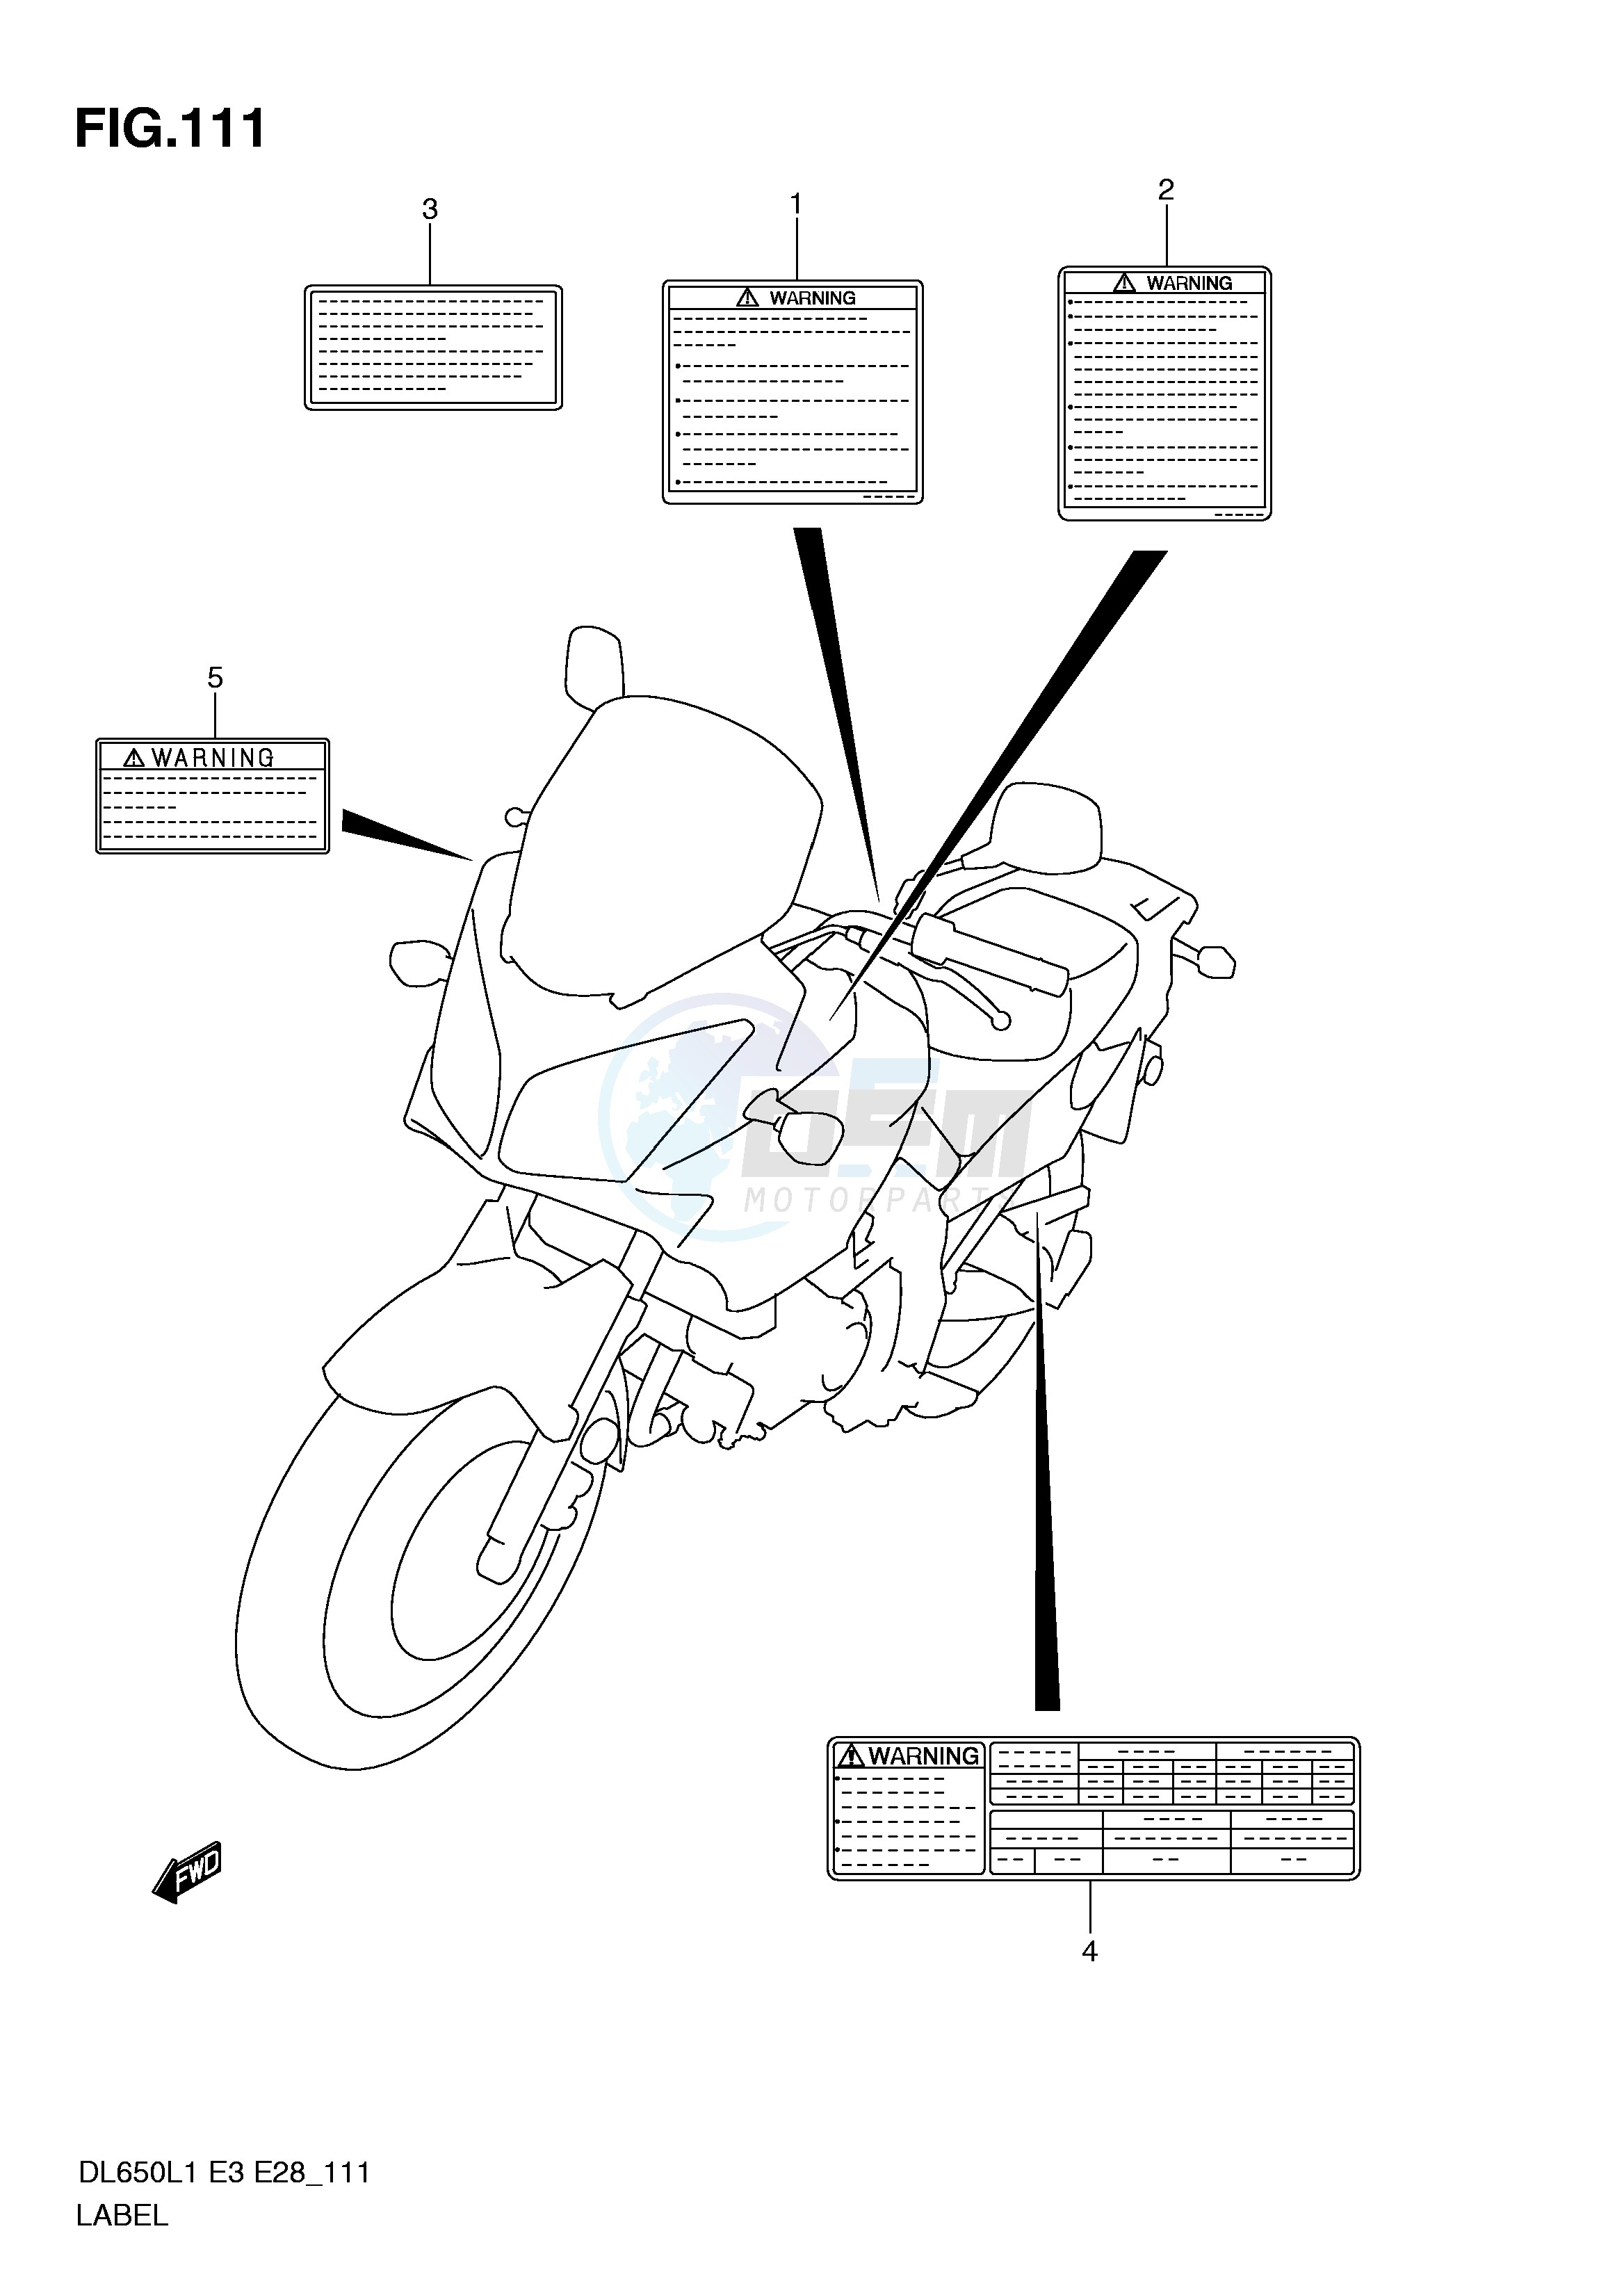 LABEL (DL650AL1 E3) blueprint